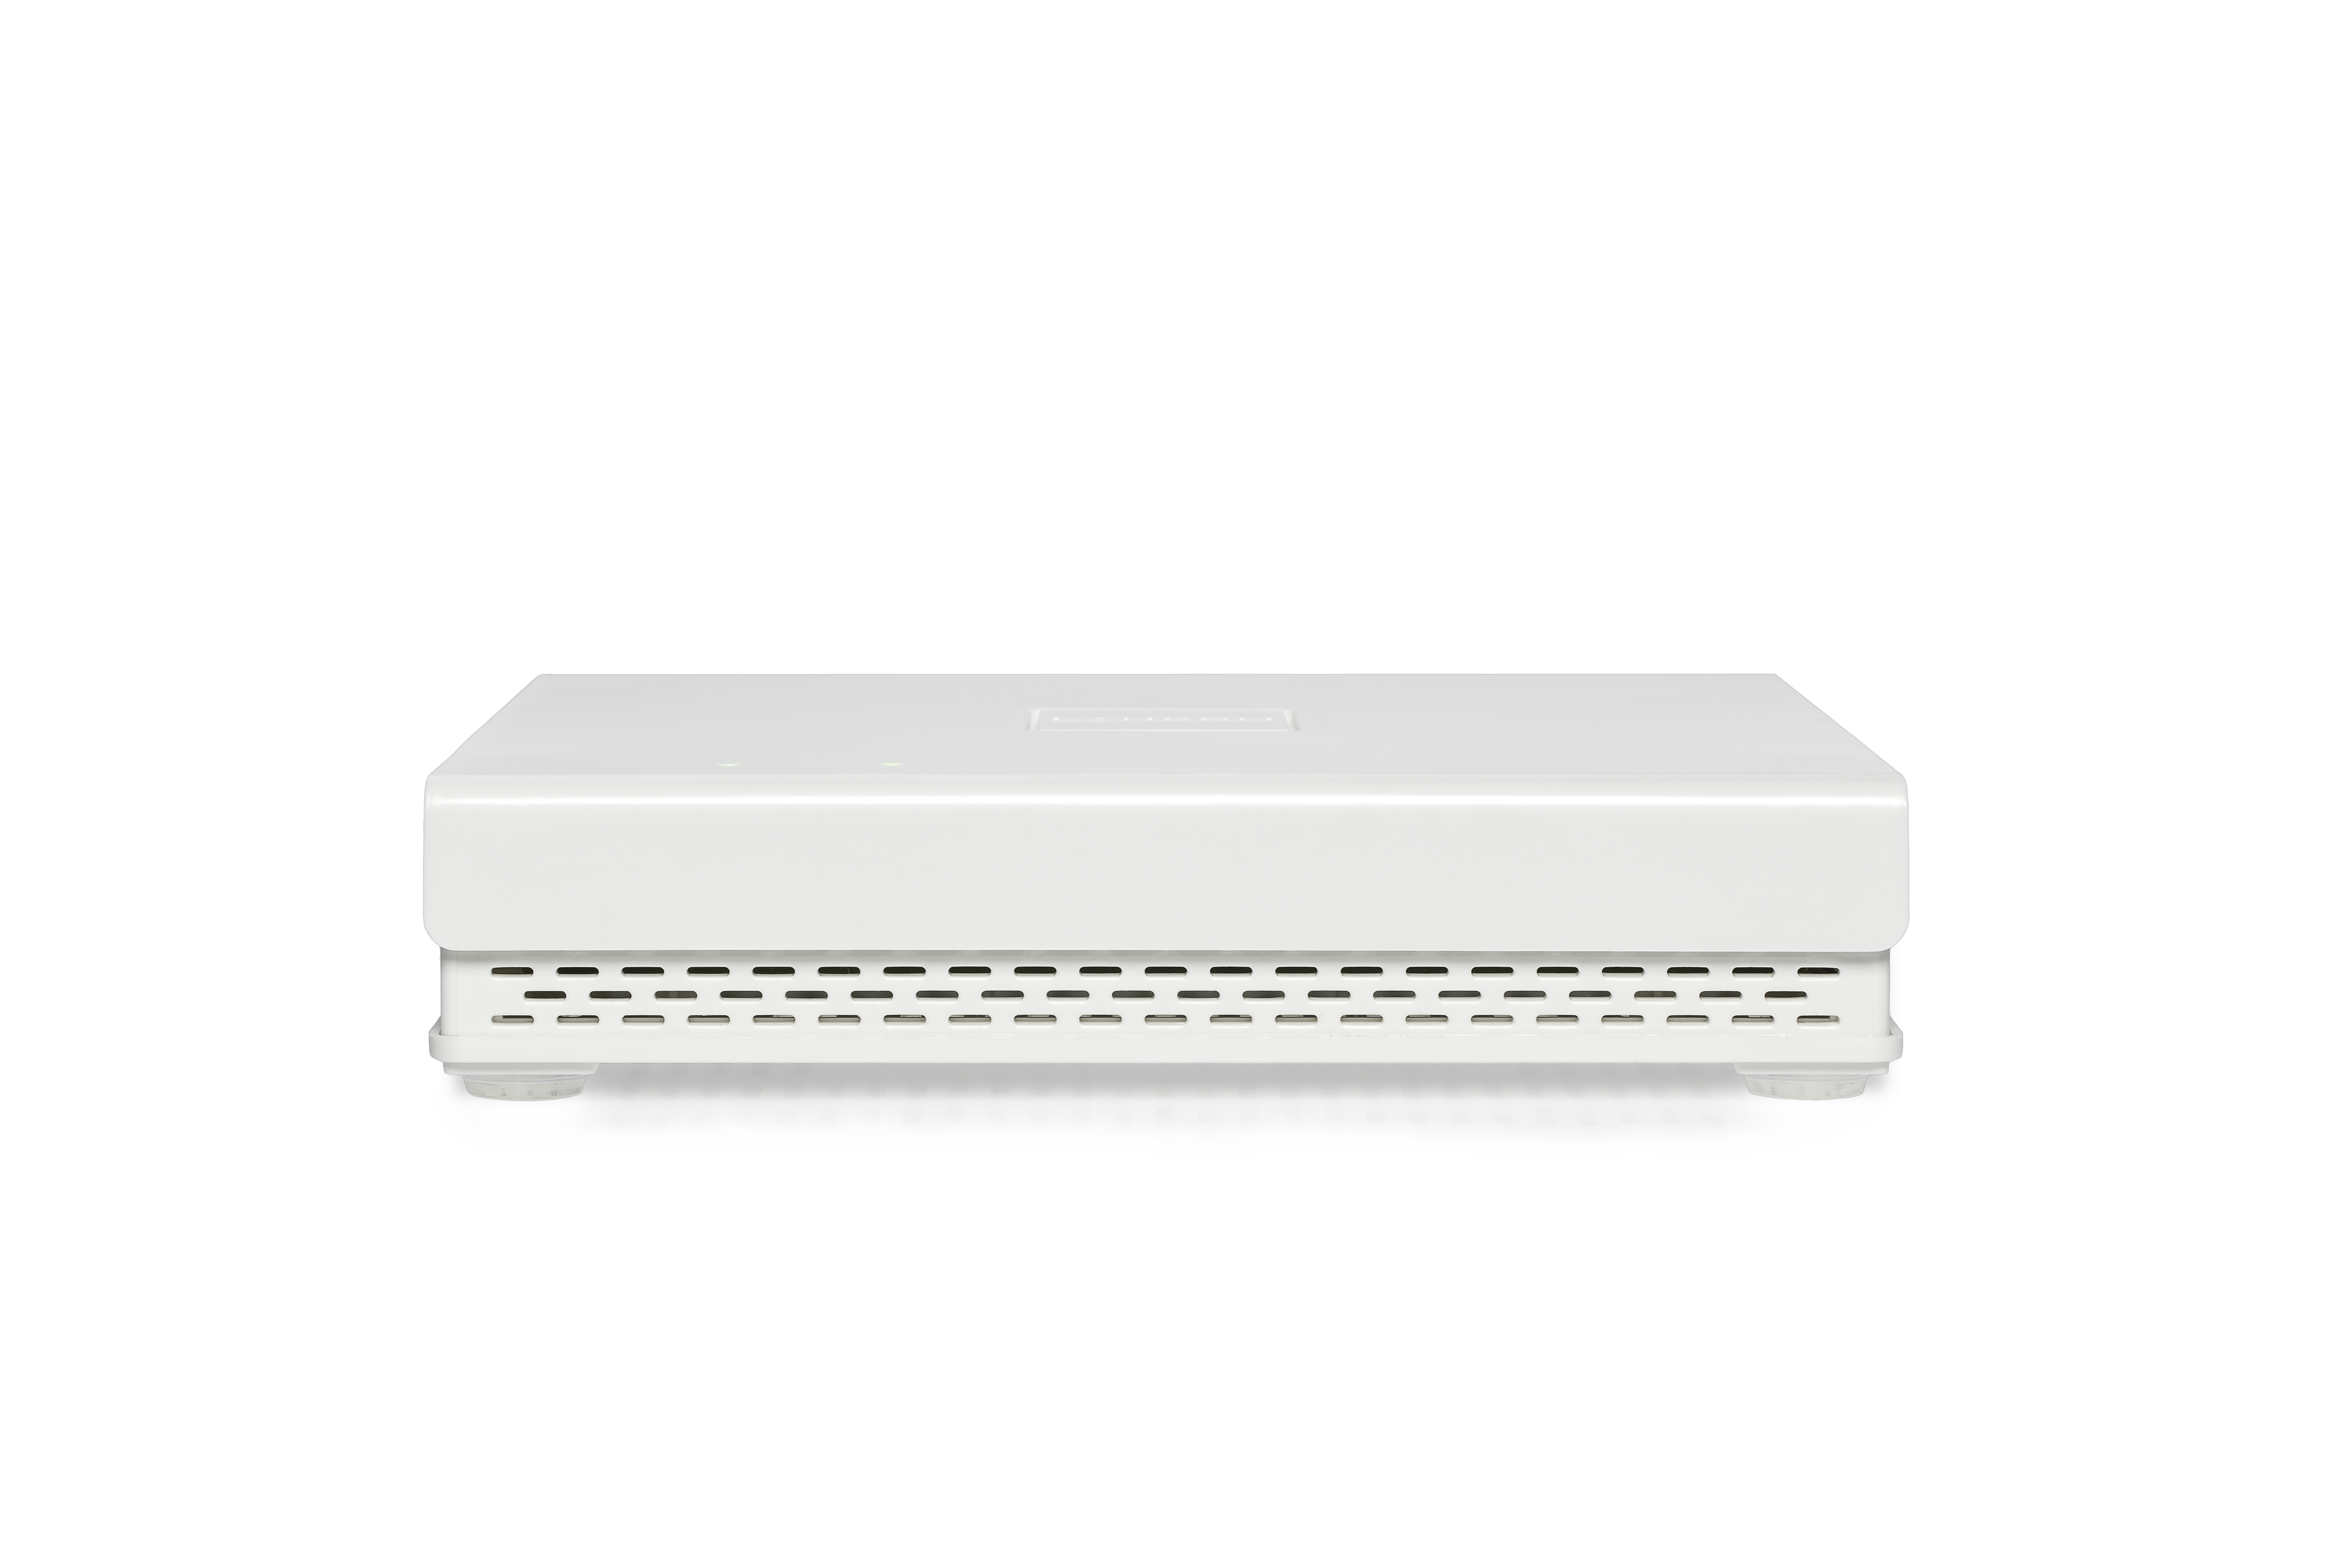 Weißer, eckiger Indoor Access Point mit eingestanztem LANCOM Logo